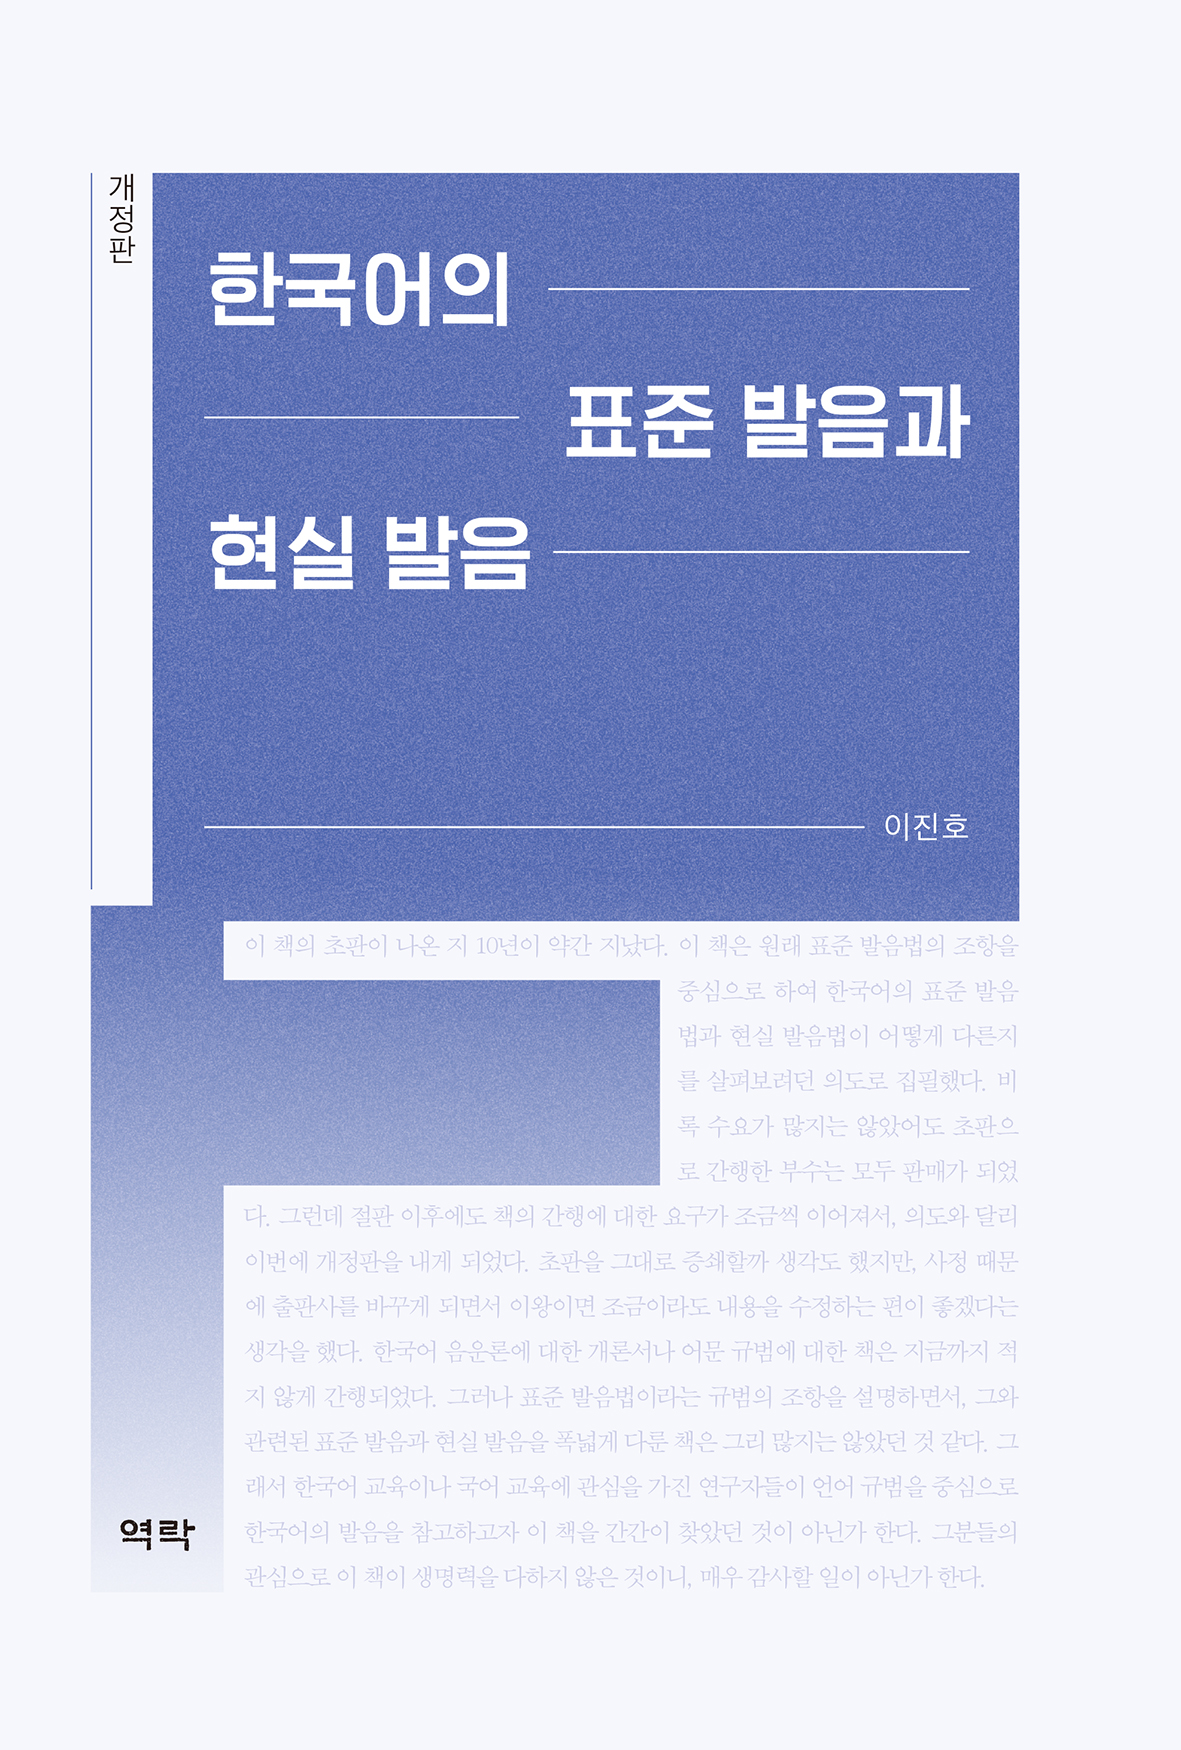 한국어의 표준 발음과 현실 발음